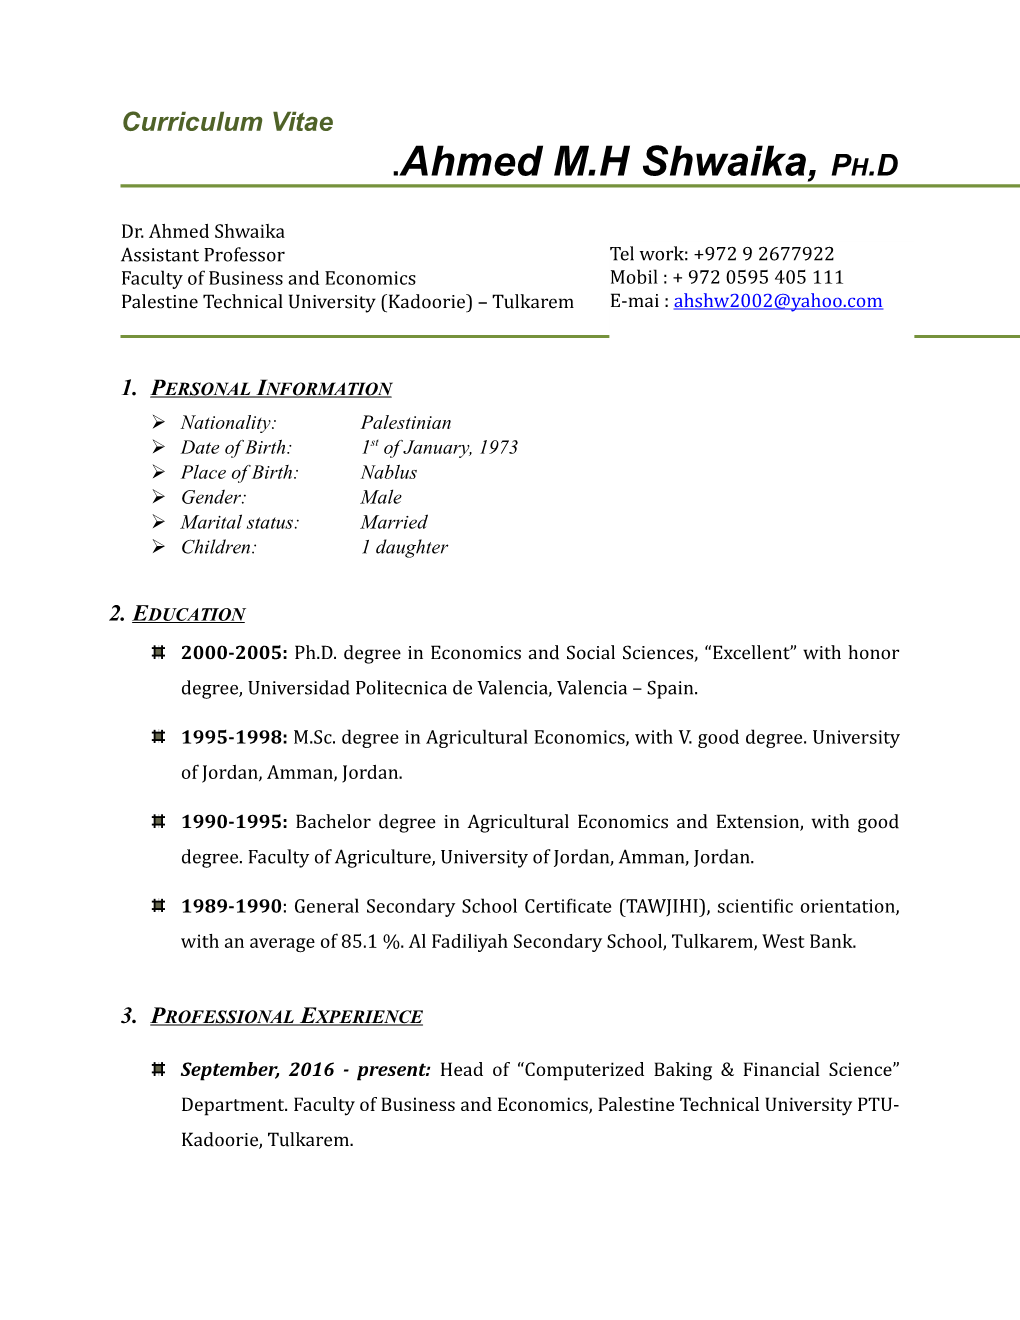 Ahmed M.H Shwaika, PH.D